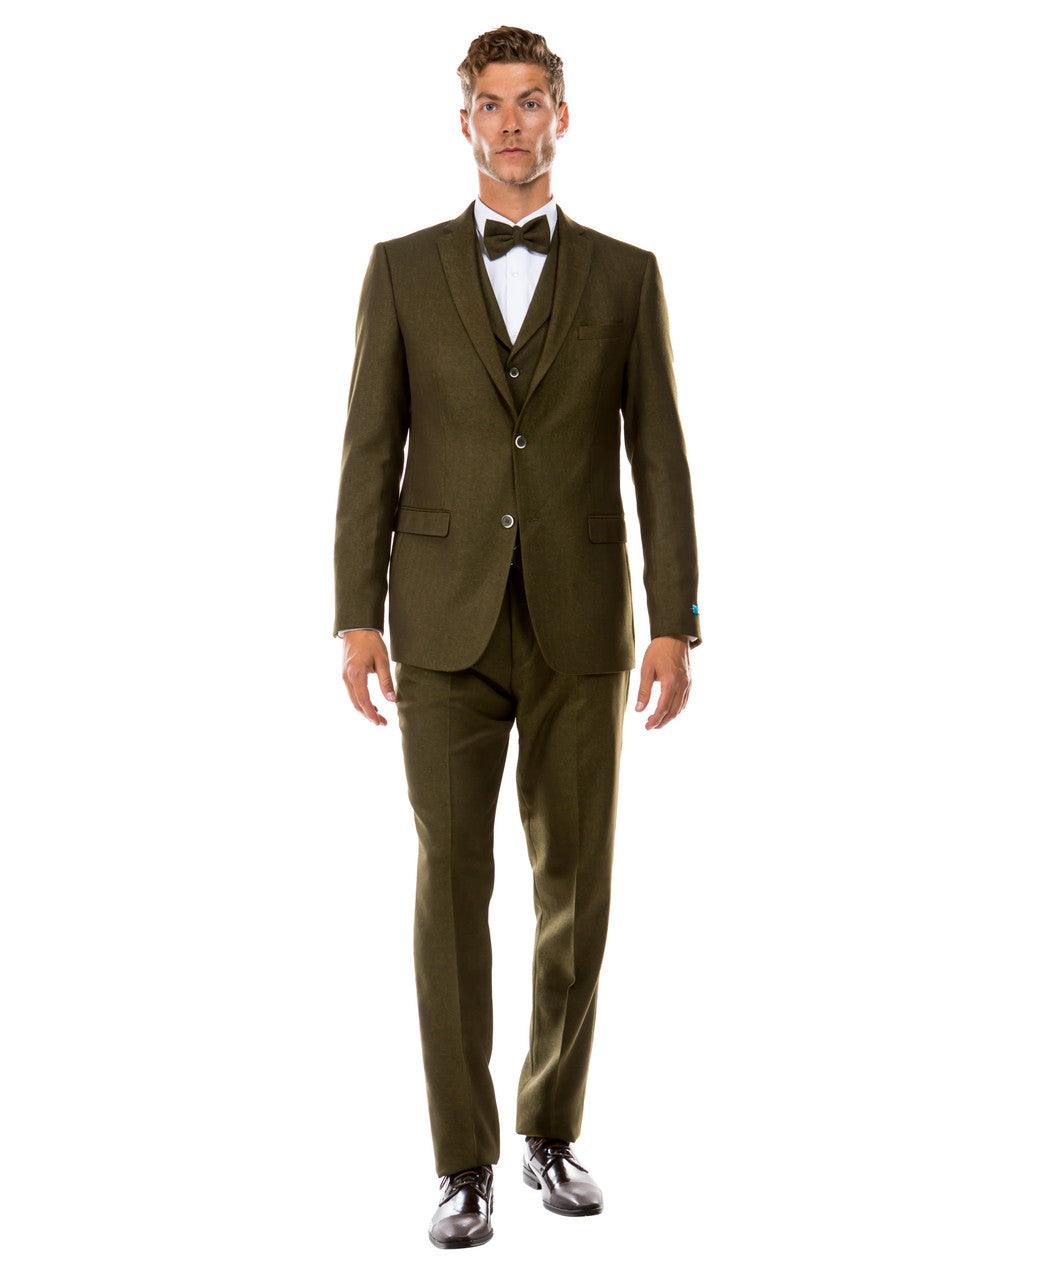 Sean Alexander Hybrid Fit Tweed Suit, Olive - Julinie